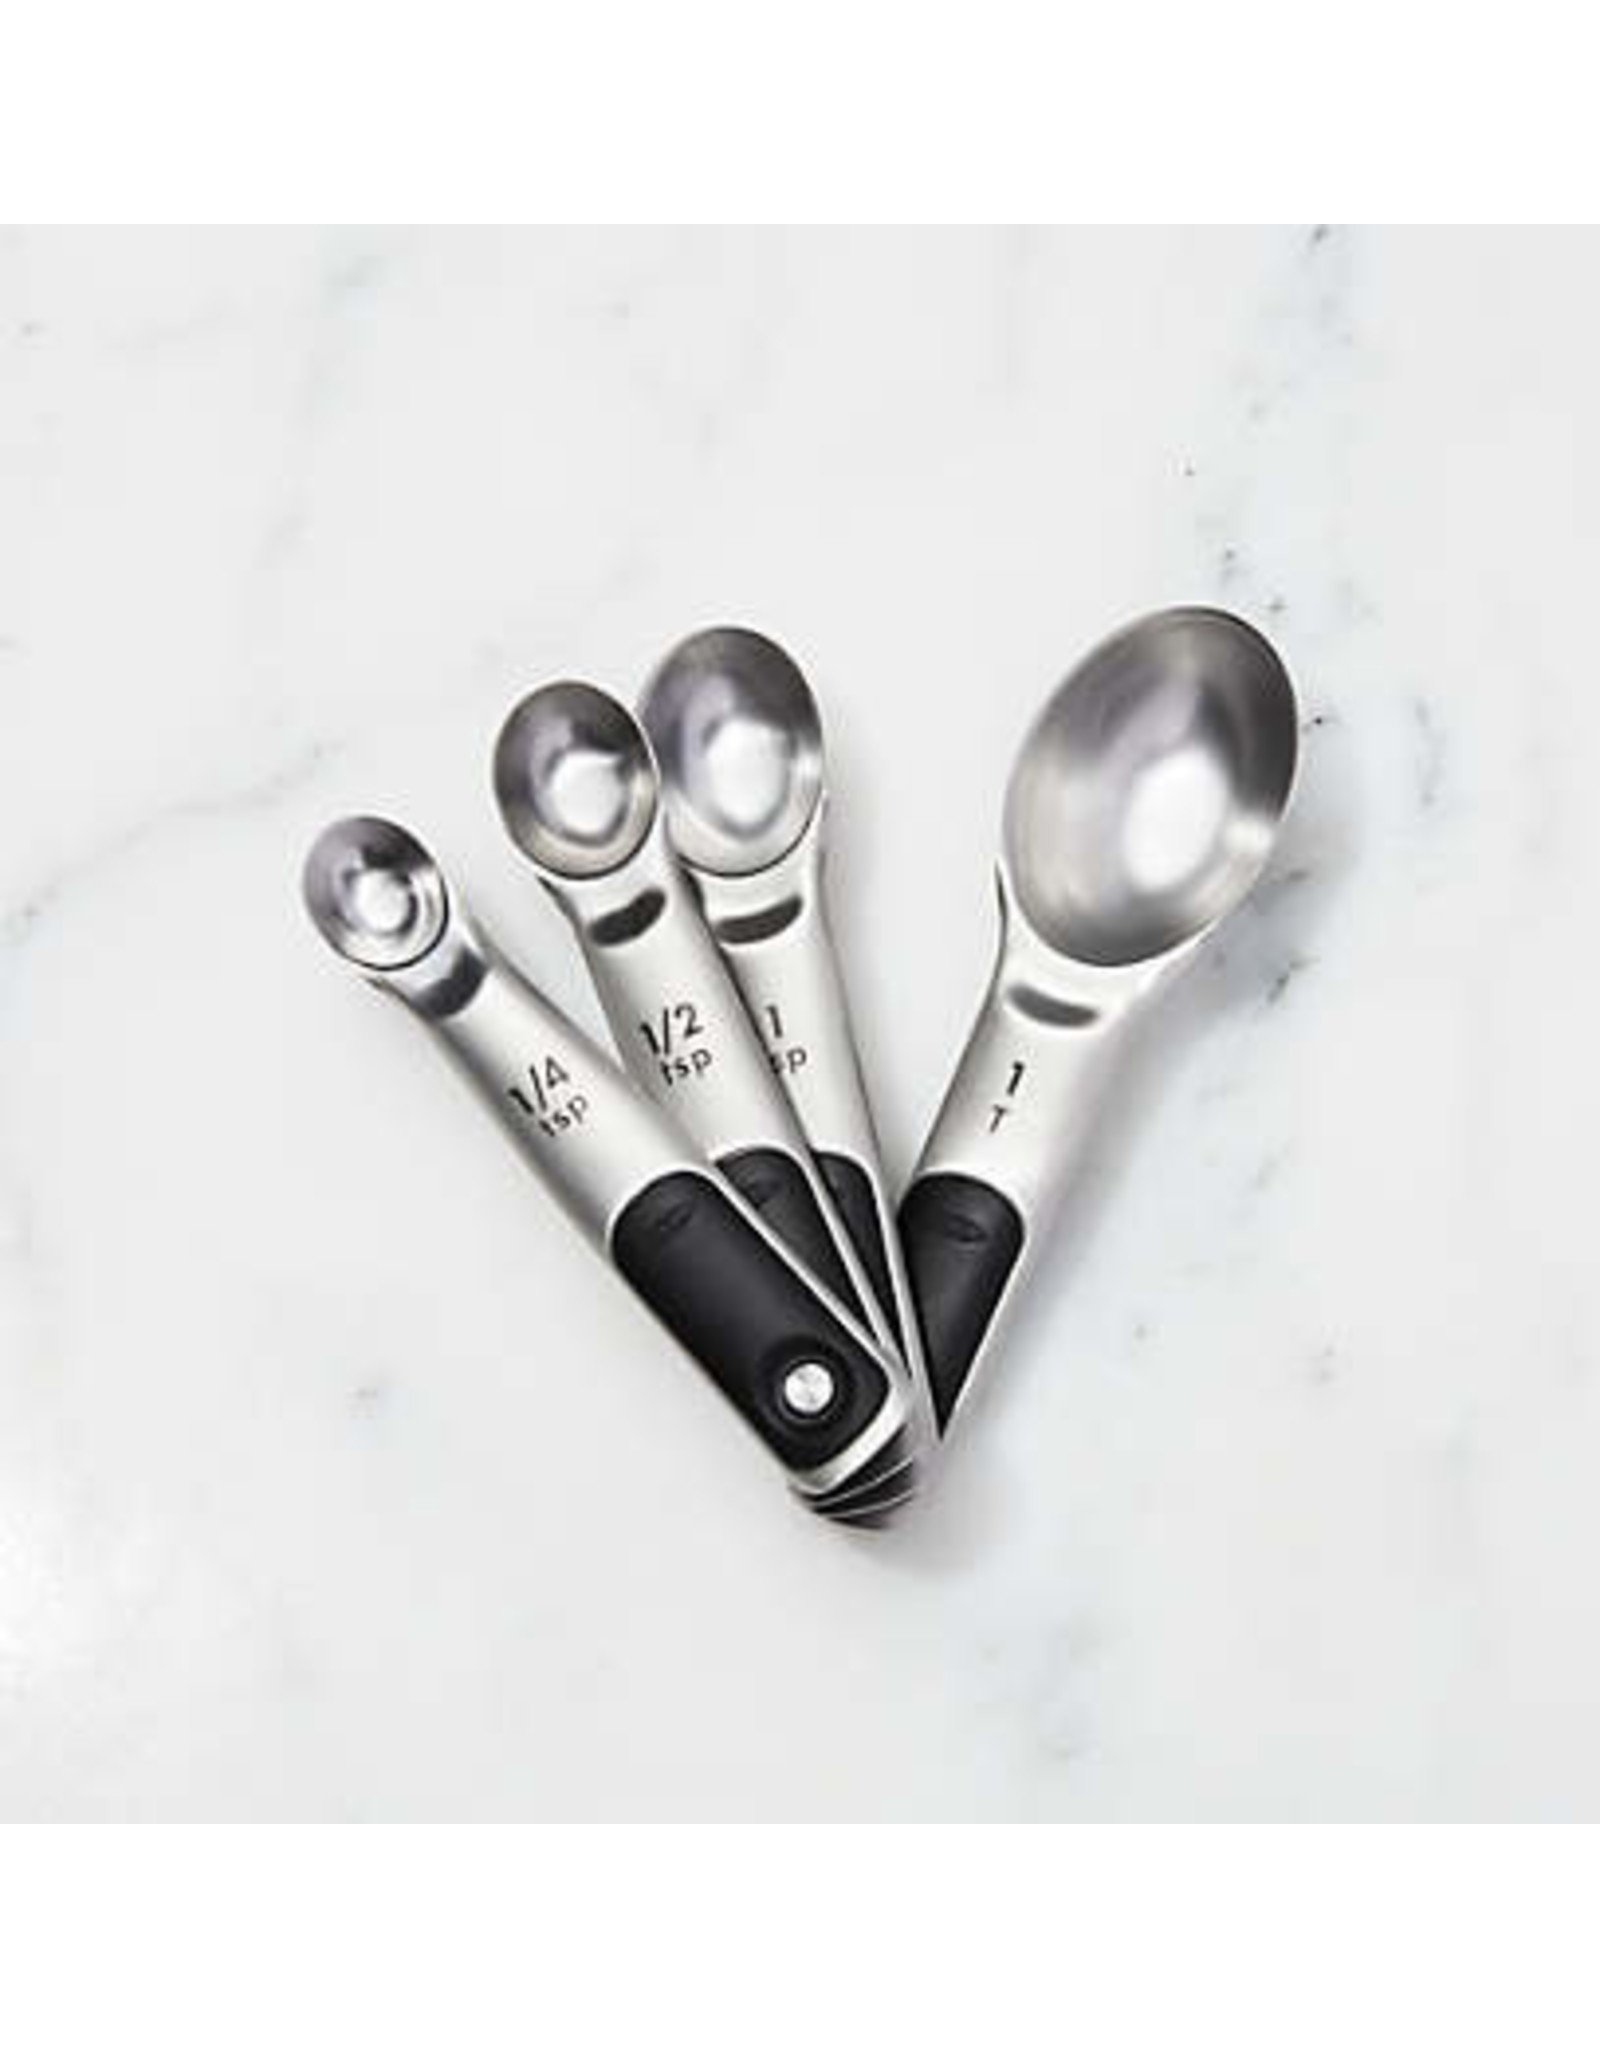 OXO OXO Measuring Spoons Set